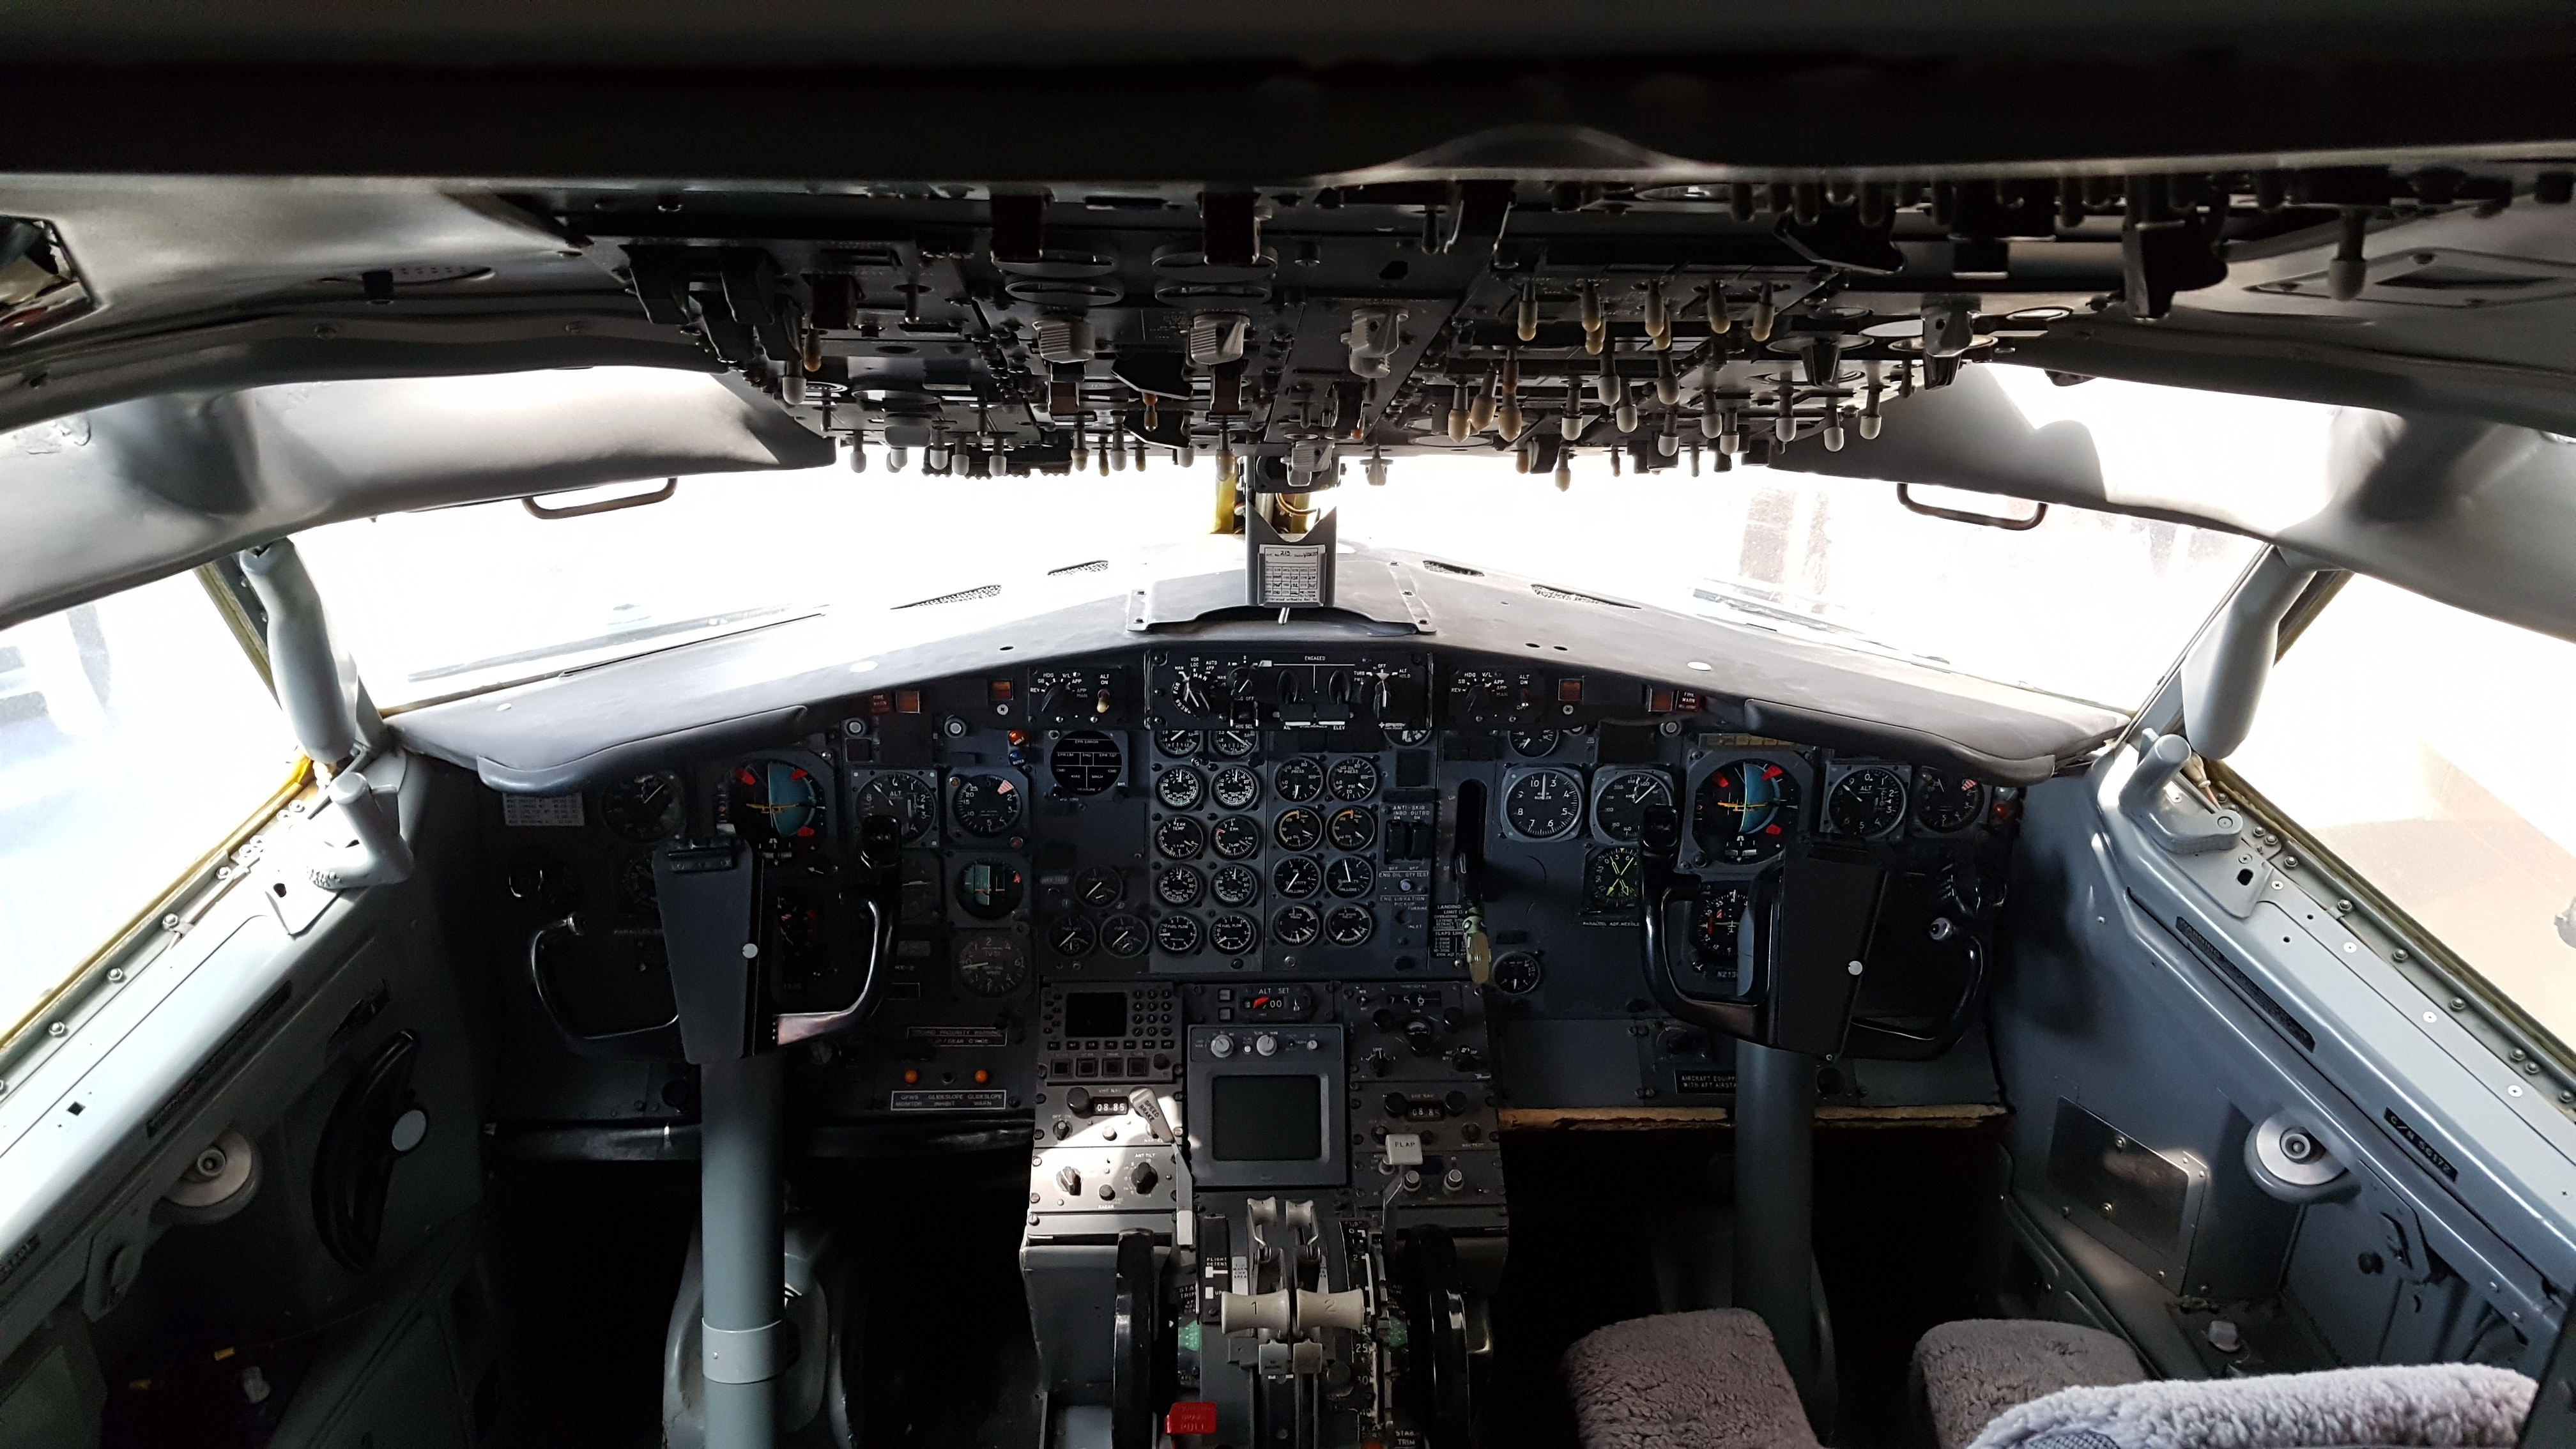 Boeing 737-201 cockpit